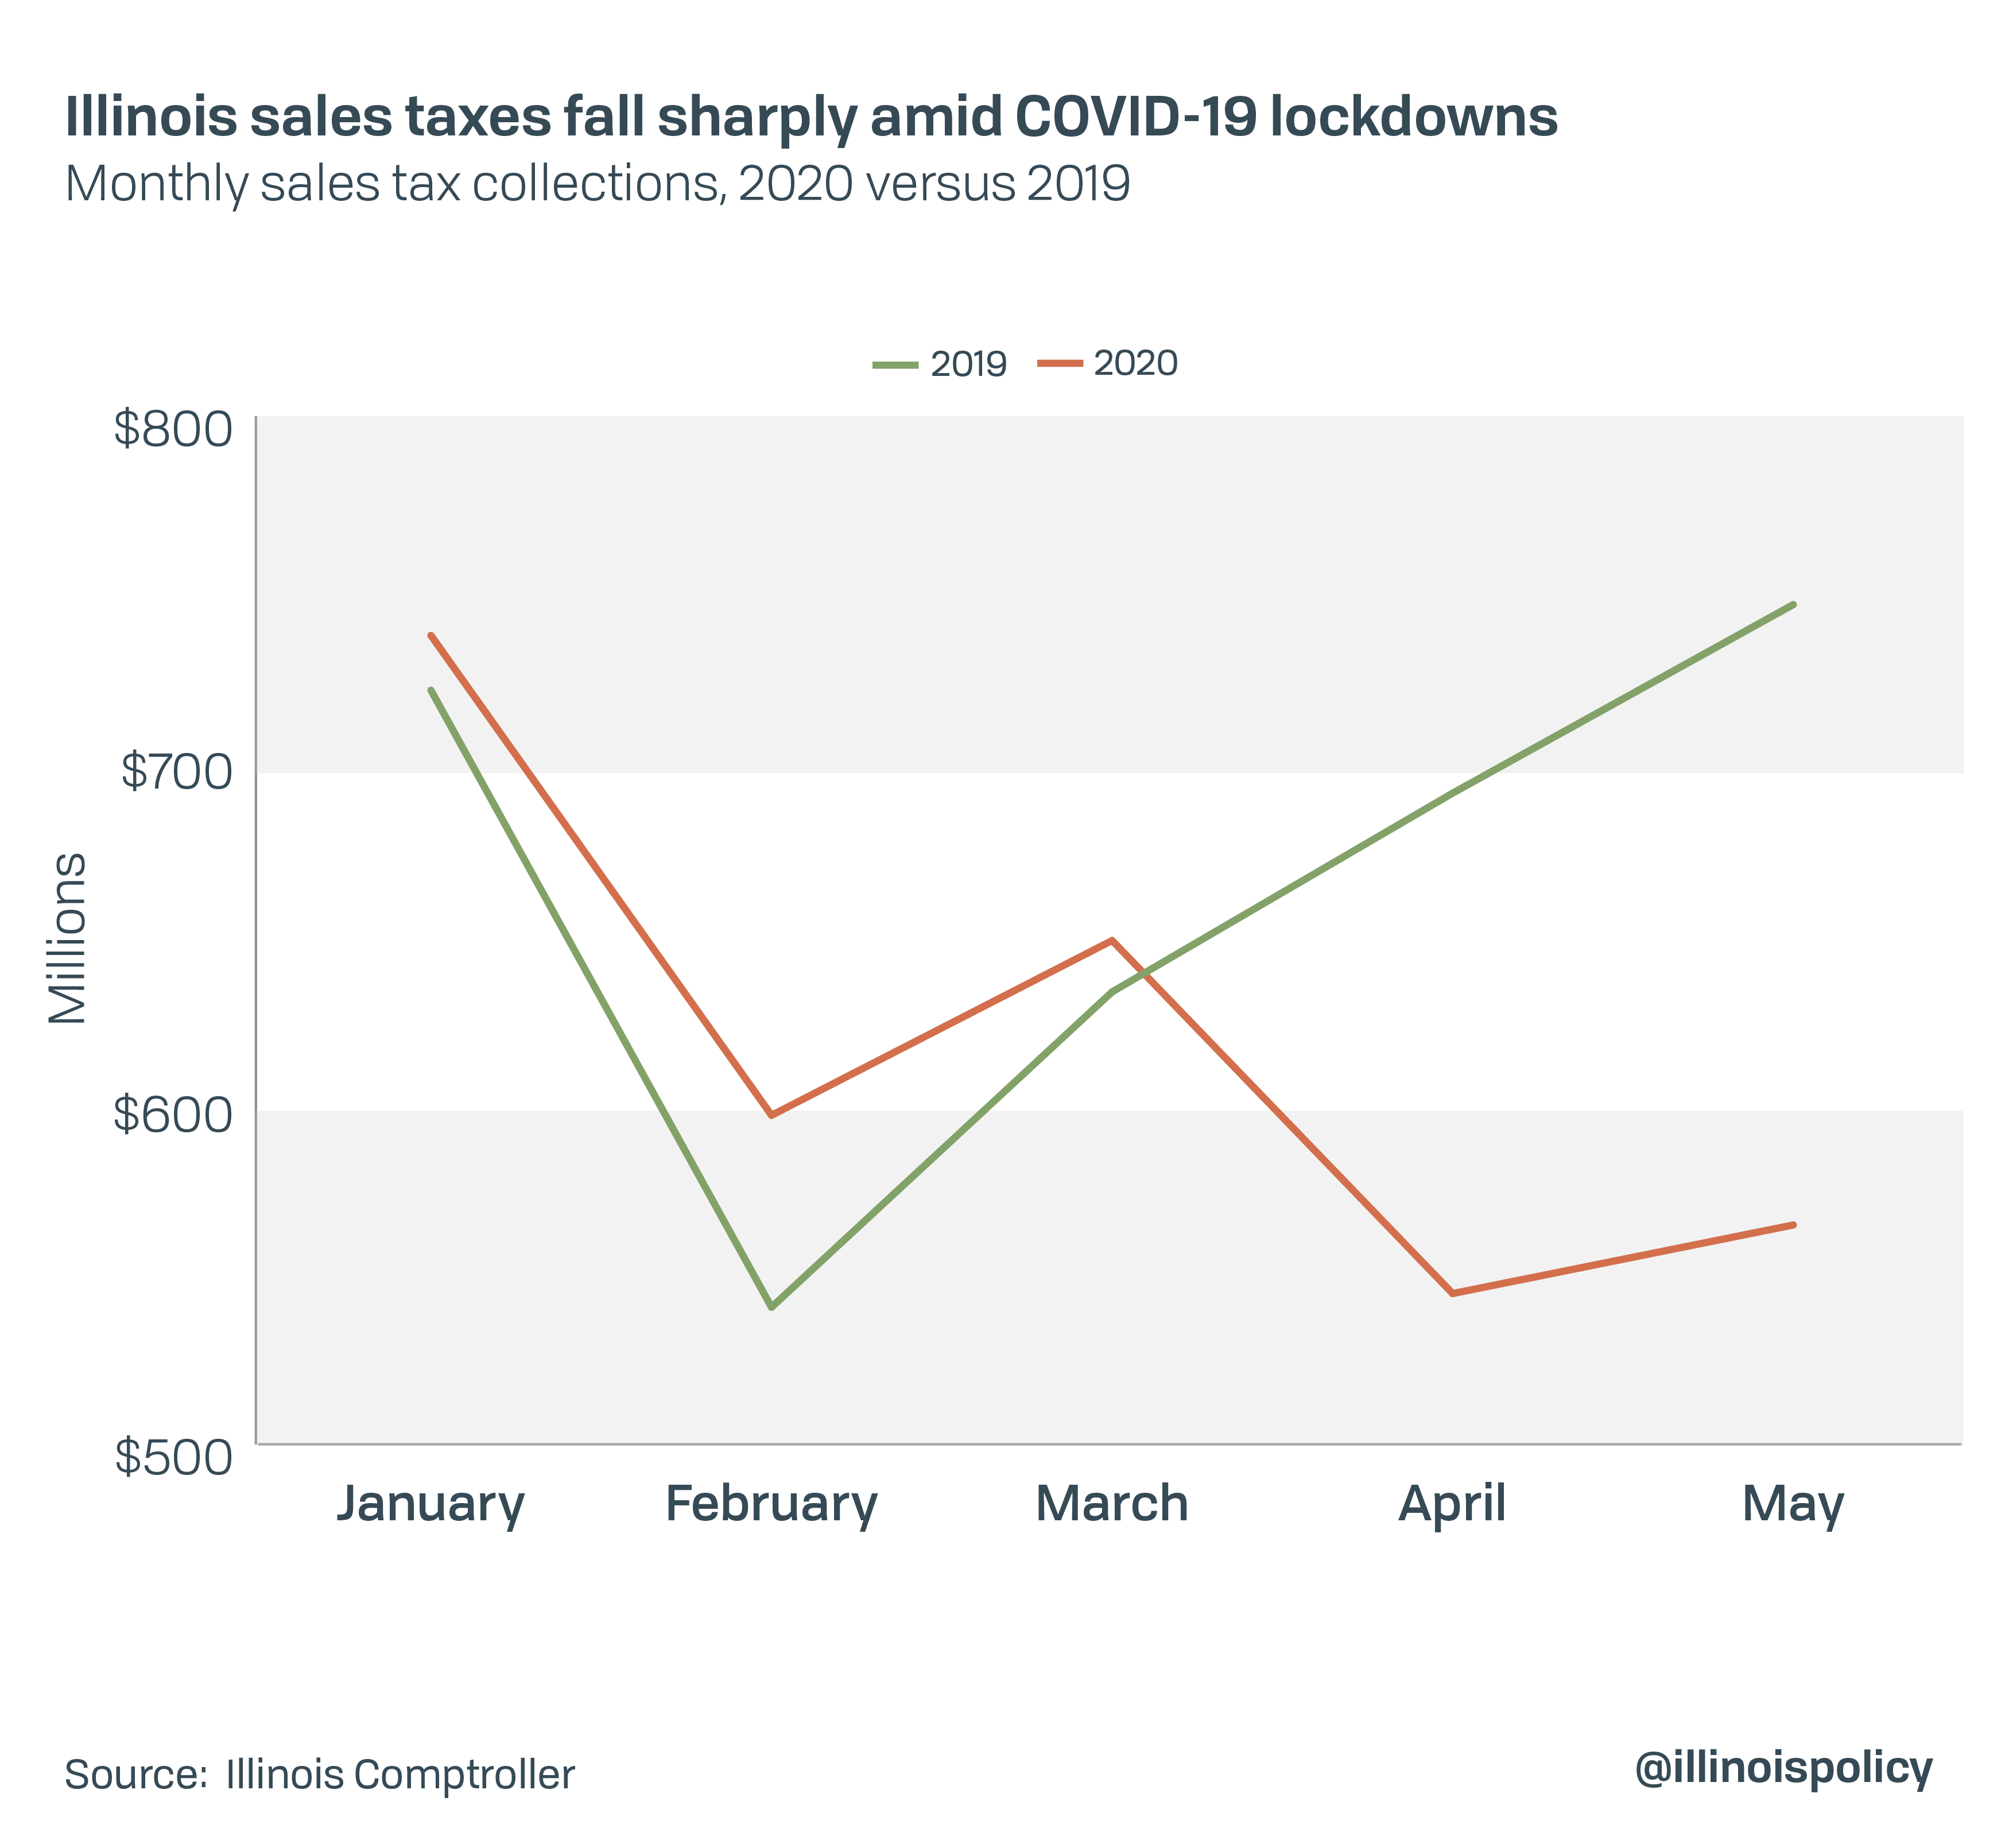 Illinois sales taxes fall sharply amid COVID-19 lockdowns